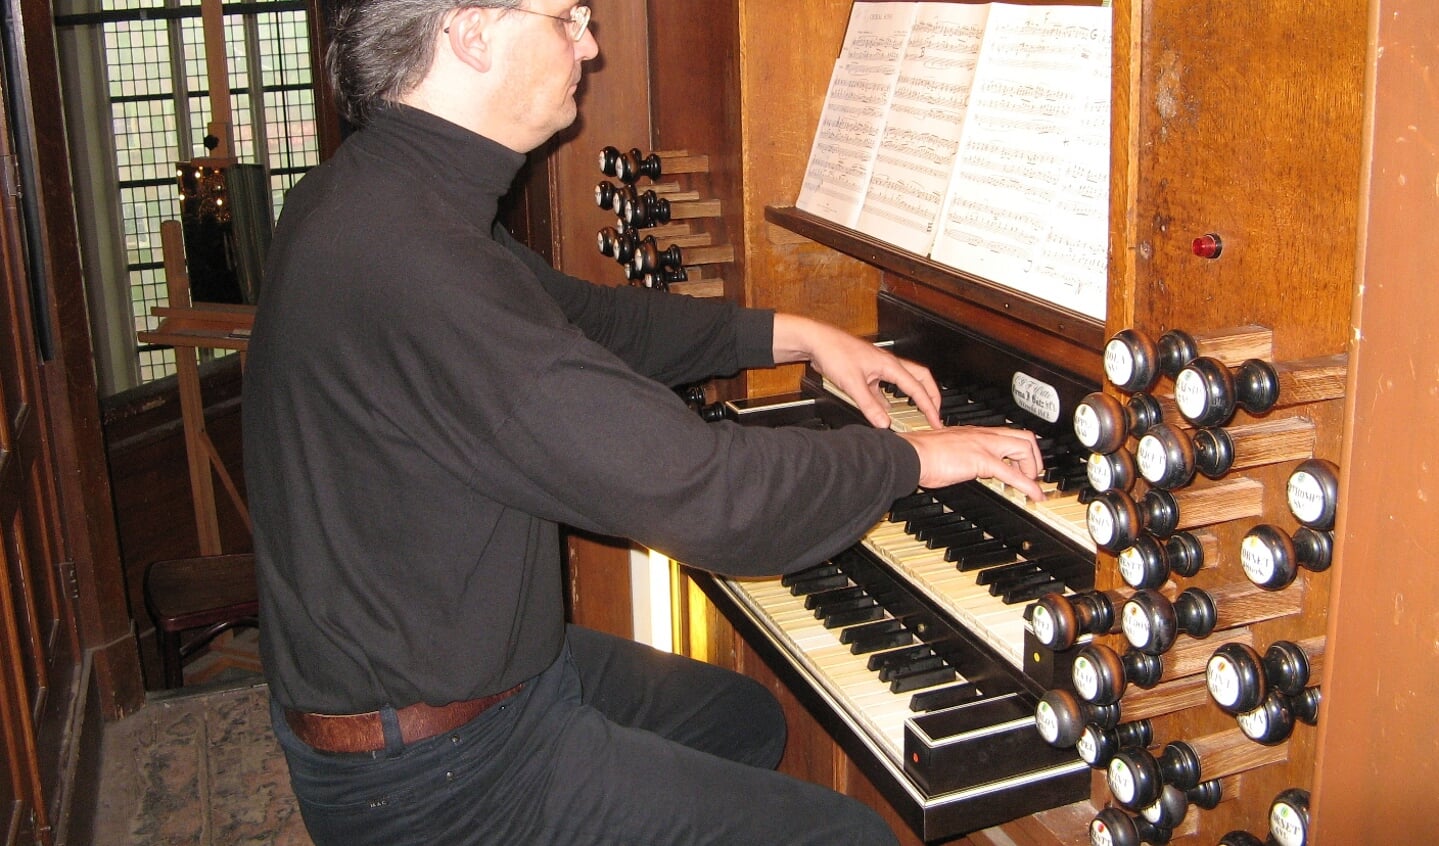 Wybe kooijmans bespeelt het orgel in de Grote Kerk van Naarden.